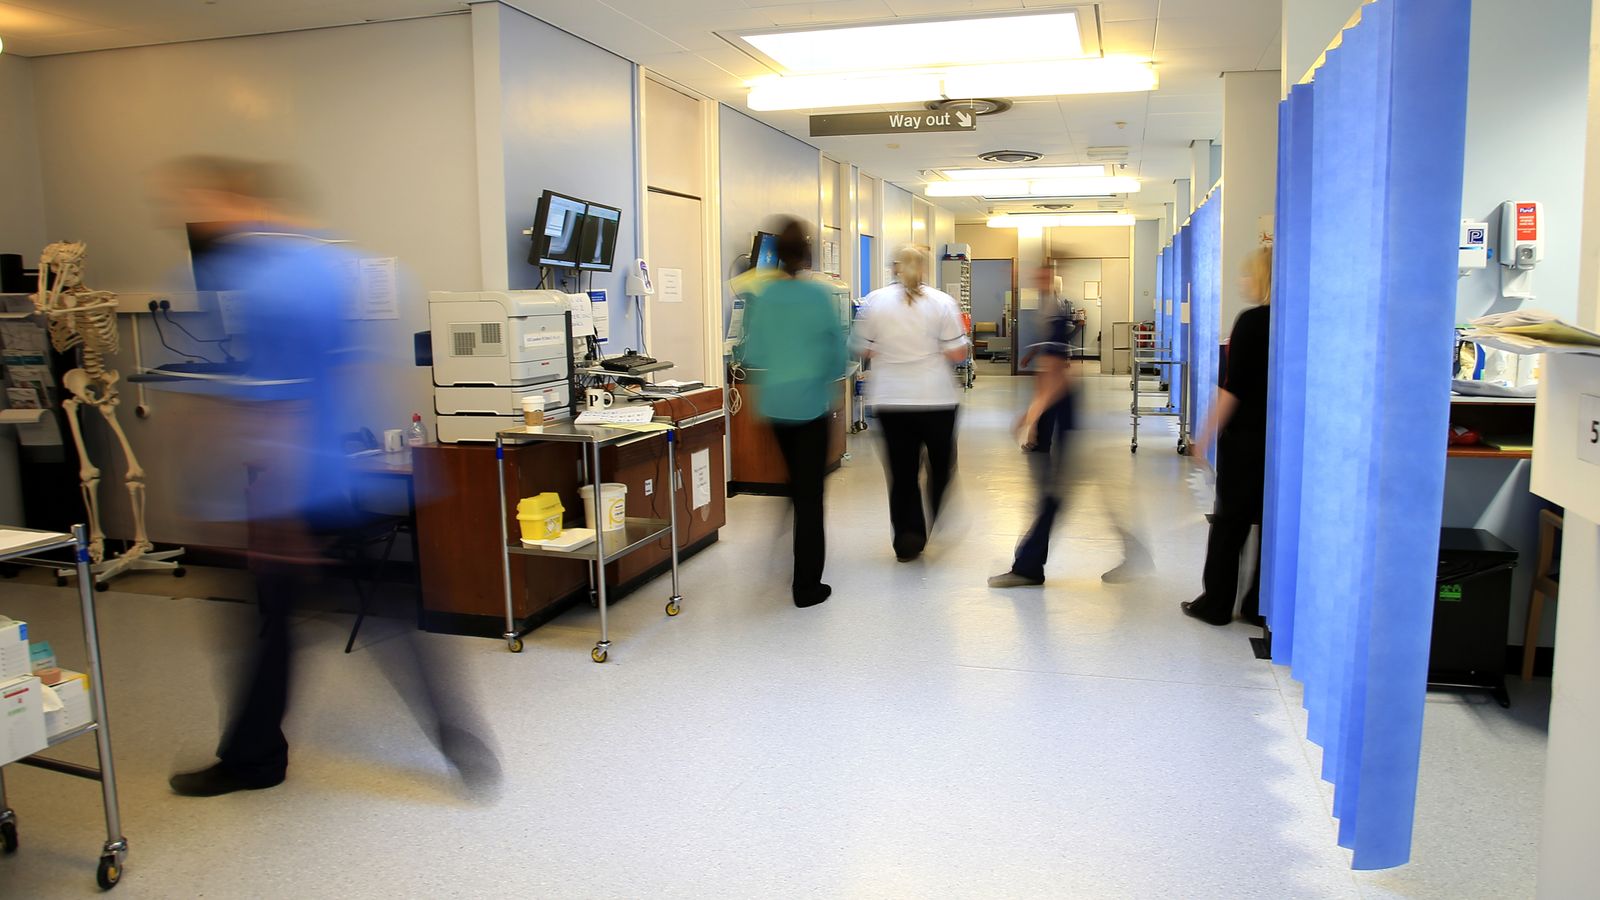 Les corps se décomposent dans les hôpitaux du NHS en raison d’un stockage inadéquat et du manque d’espace de congélation, préviennent les inspecteurs |  Nouvelles du Royaume-Uni